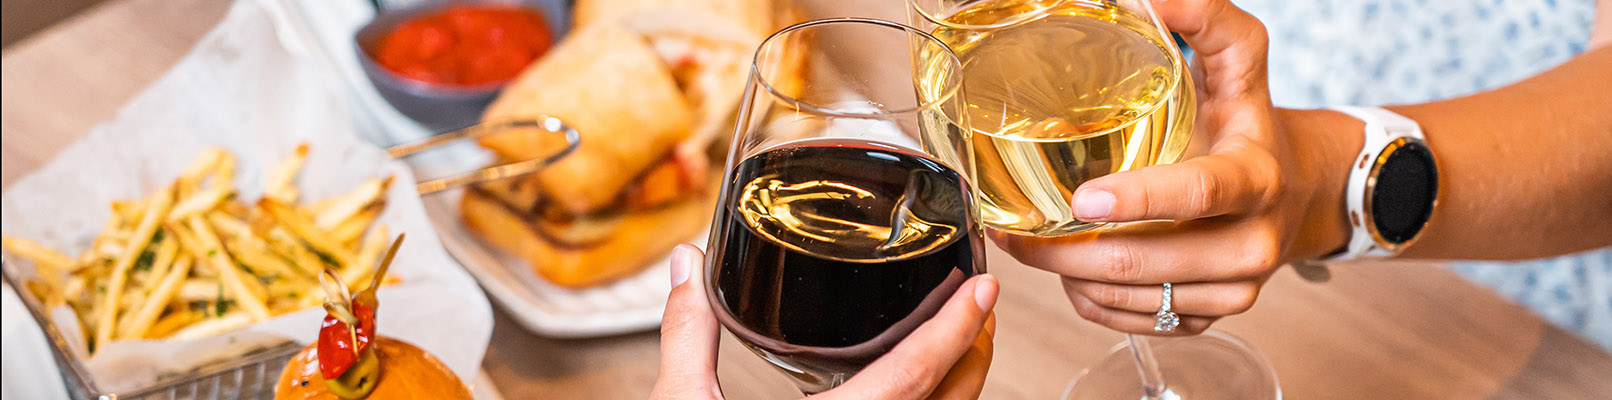 Пий та їж смачно: які закуски подати до вина